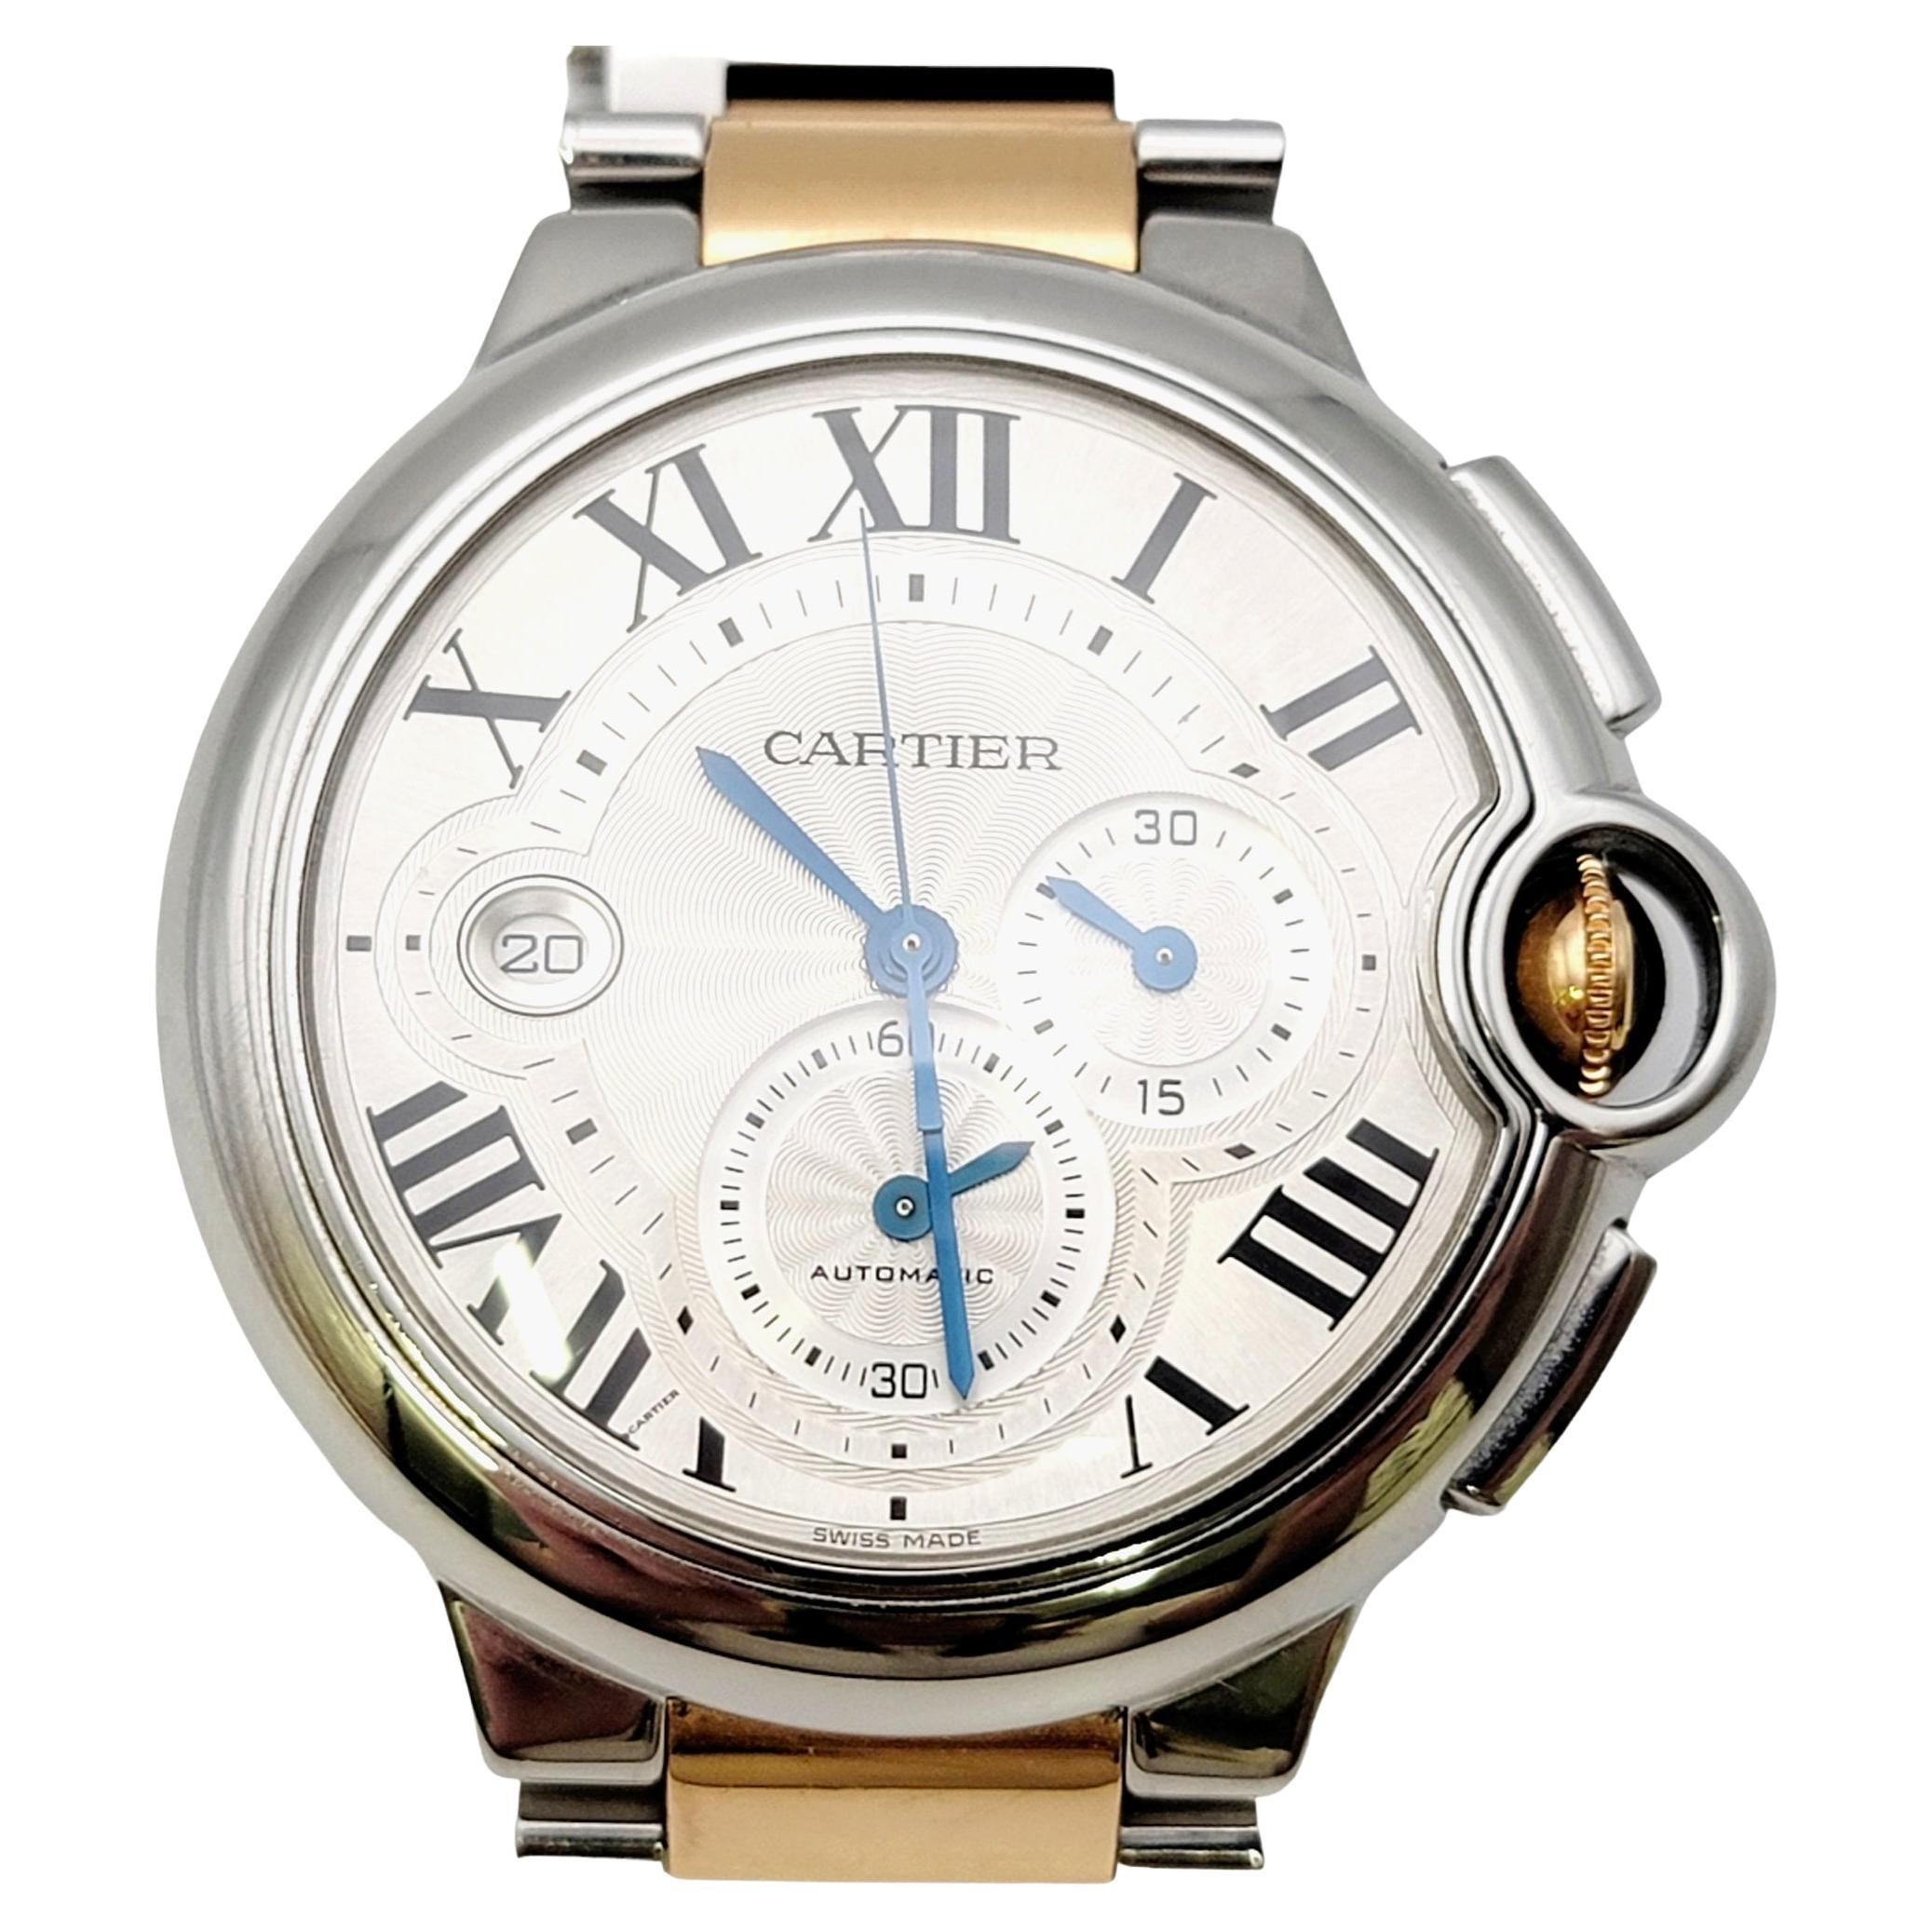 Cartier Extra Large Ballon Bleu De Cartier Stainless Steel and Rose Gold Watch